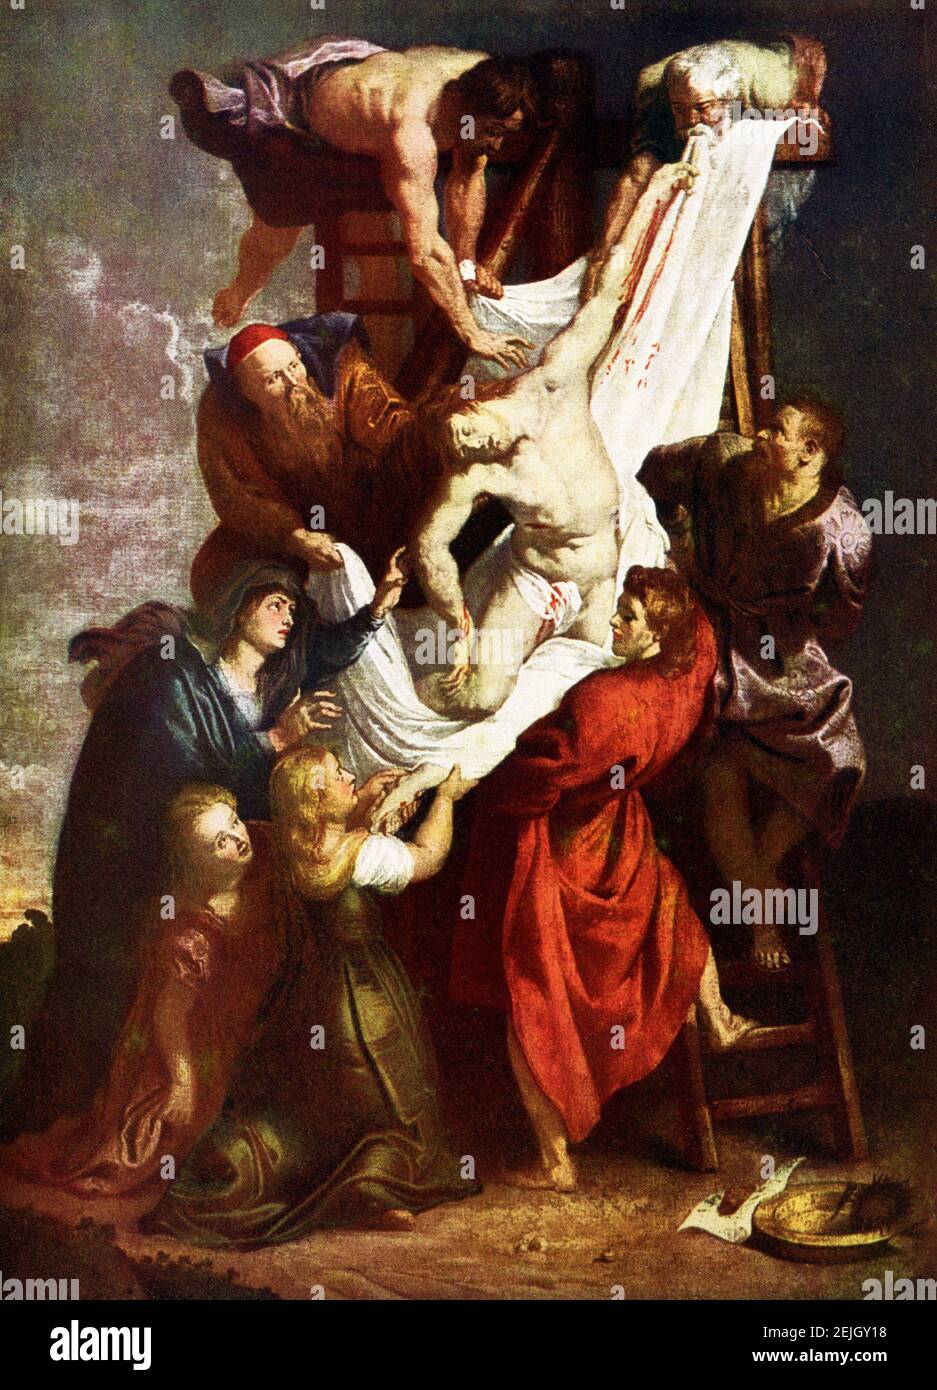 Cette image montre la Die Kreuzabnahme (le descendant de la Croix) de Peter Paul Rubens. La descente de la Croix est le panneau central d'une peinture triptyque de Peter Paul Rubens en 1612-1614. Il est toujours dans son lieu d'origine, la Cathédrale notre-Dame, Anvers, Belgique, avec un autre grand retable l'élévation de la Croix. Le sujet était un que Rubens est retourné encore et encore dans sa carrière. Sir Peter Paul Rubens (1577-1640) était un artiste et diplomate flamand du duché de Brabant dans le sud des pays-Bas qui vivait pendant l'âge d'or néerlandais. Il est considéré le plus Banque D'Images